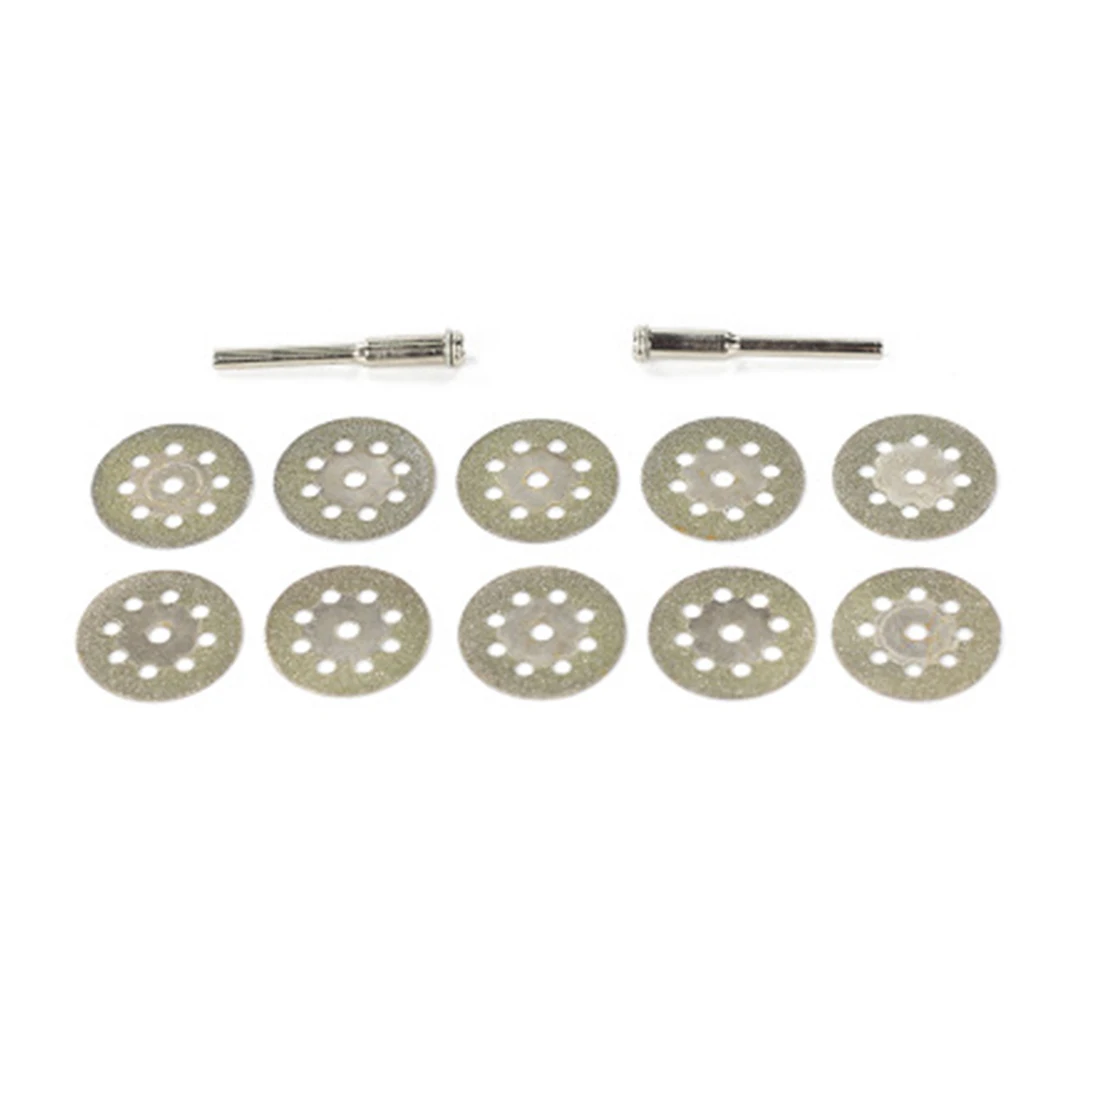 Хит! 10 шт. Dremel Аксессуары 20 мм Алмазный Dremel режущий диск для металла шлифовальный диск дисковая пила для сверла роторный инструмент